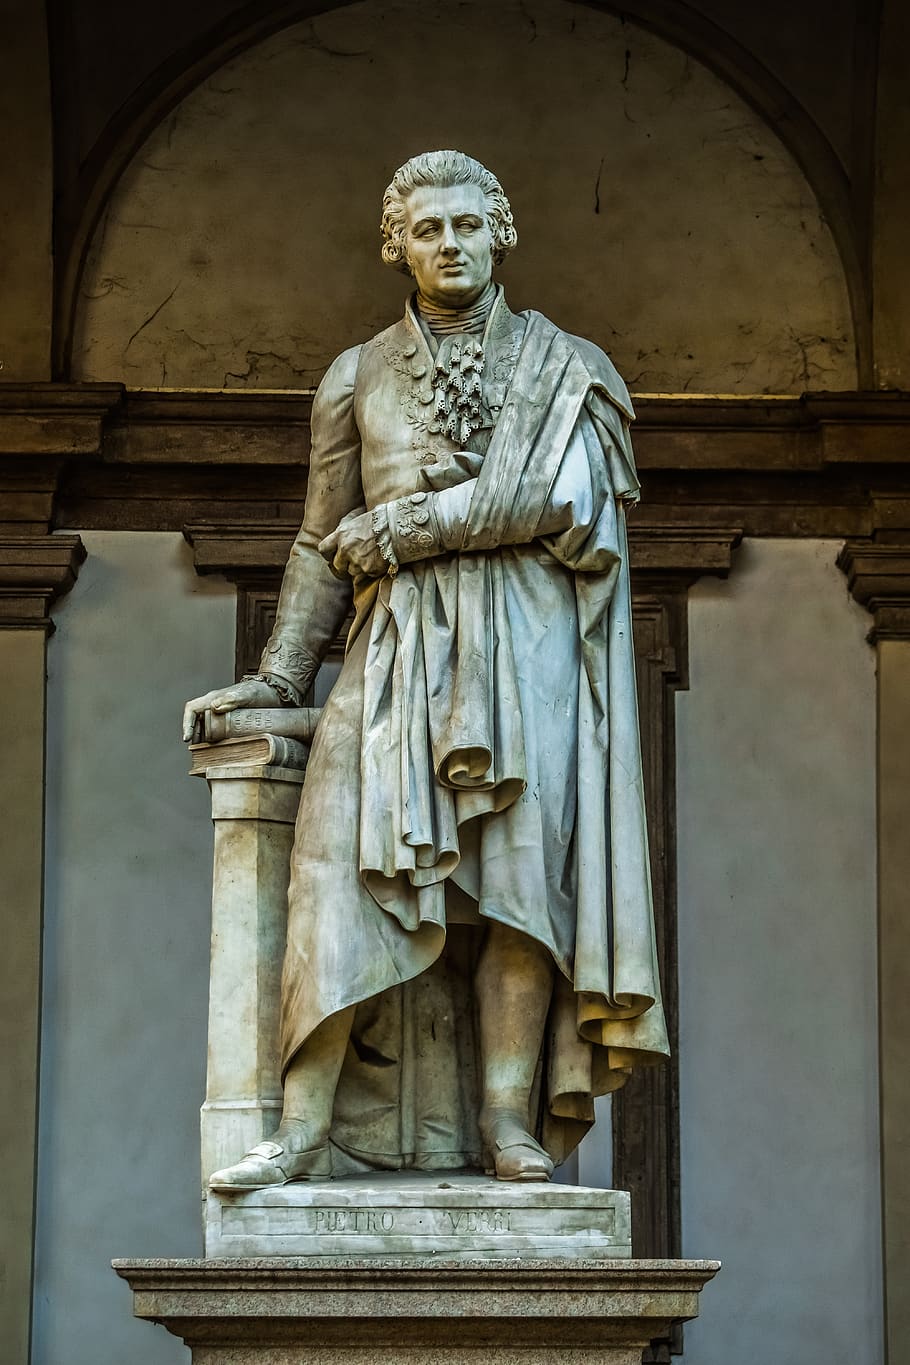 pietro verri, economist, historian, philosopher, writer, italian, statue, sculpture, architecture, monument